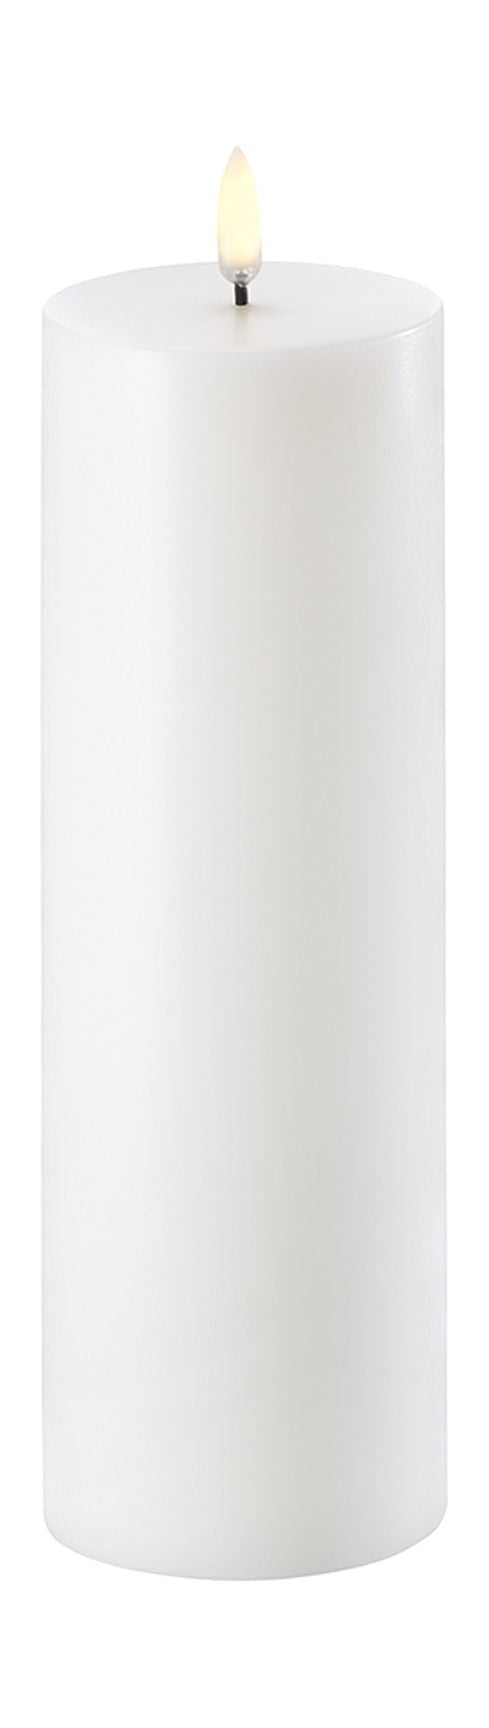 Vela de pilar LED de iluminación de Uyuni 3 D Flame Øx H 7,3x22 cm, Nordic White